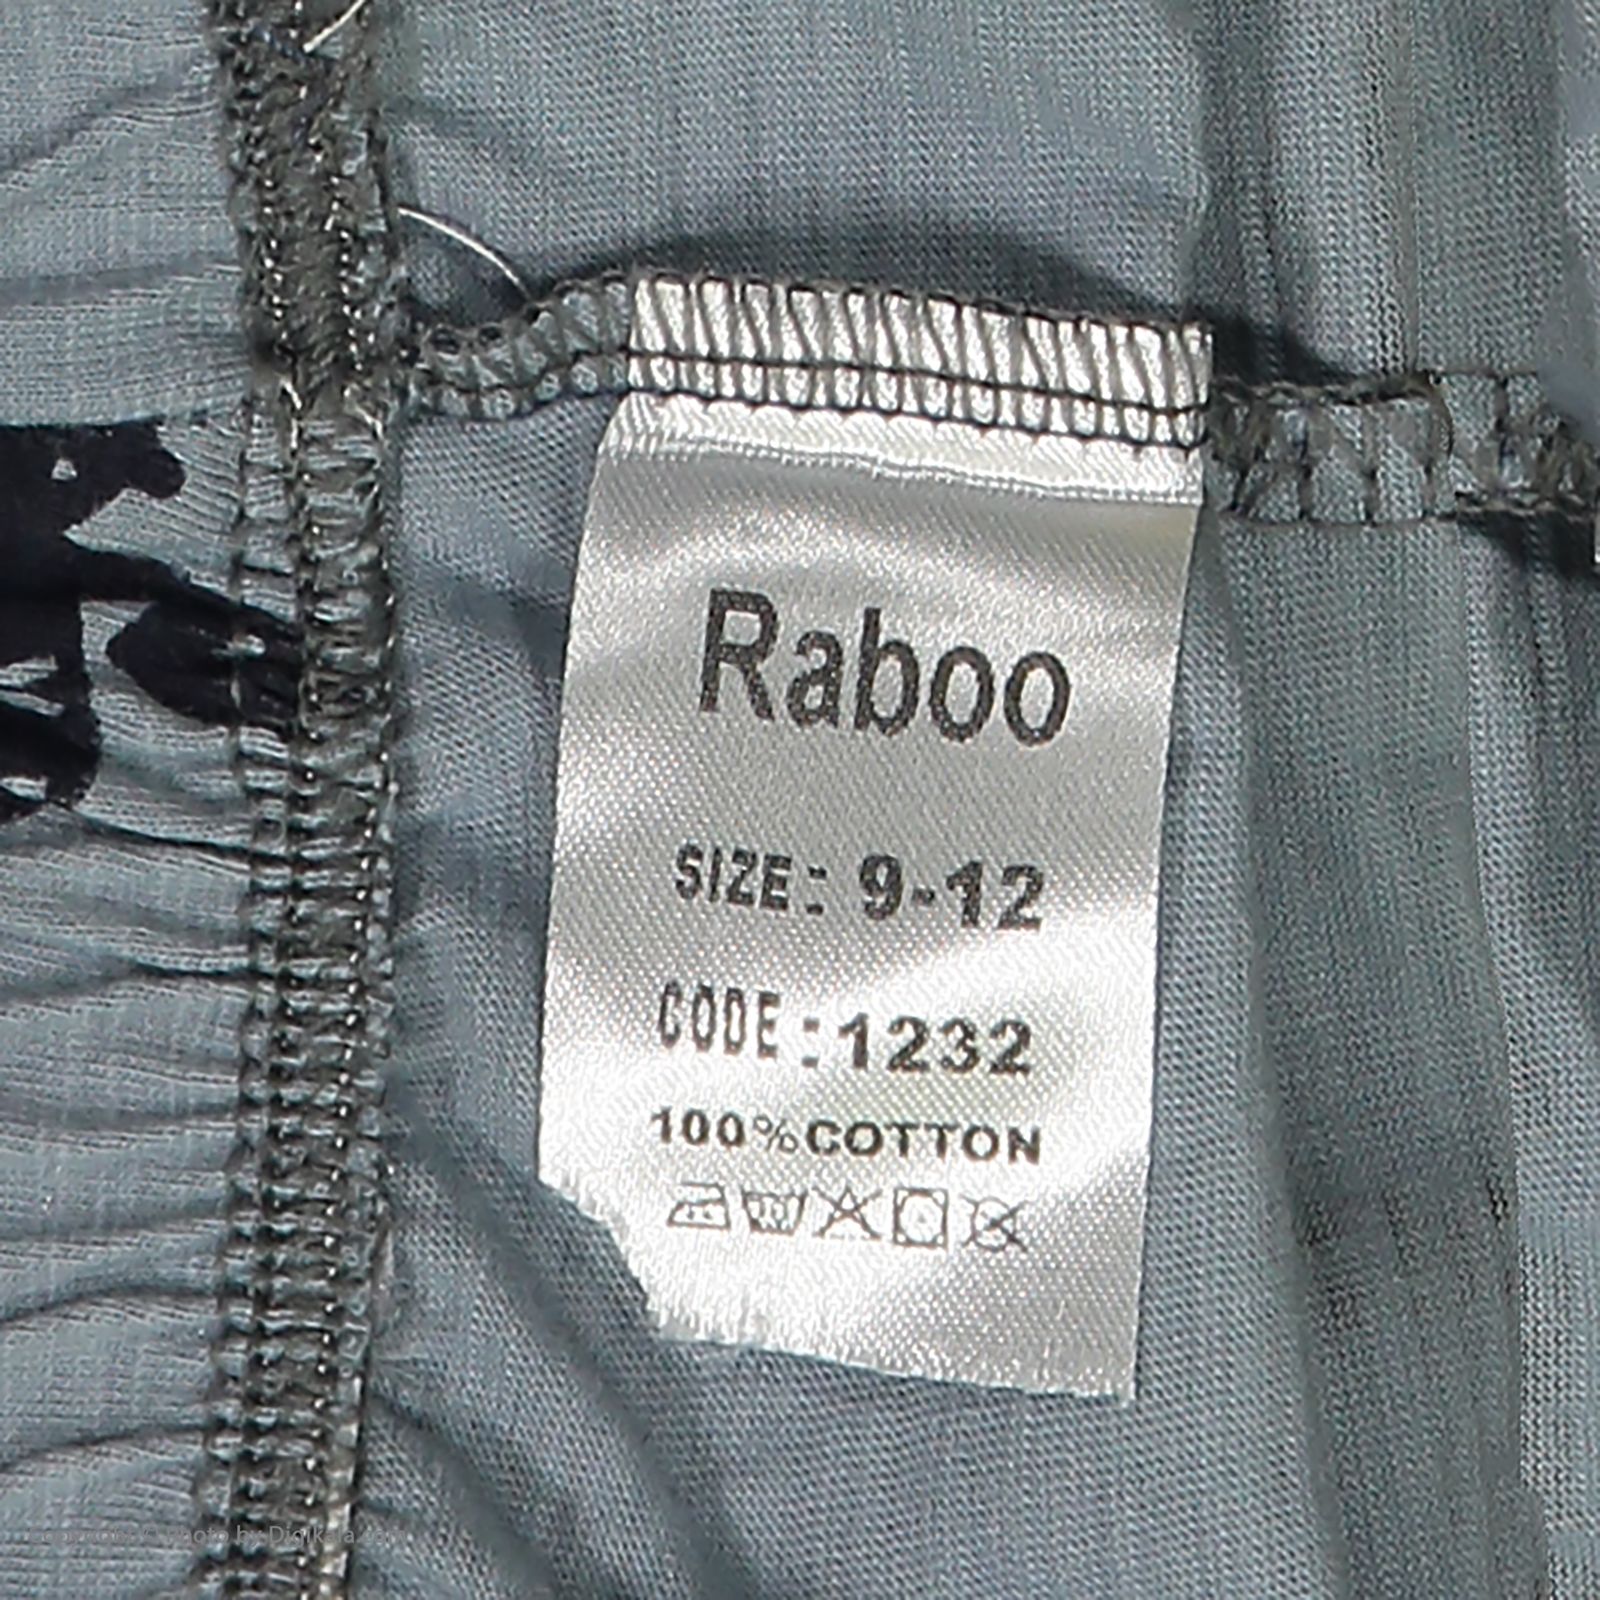 ست تی شرت و شلوار دخترانه رابو مدل 2051122-11 -  - 10